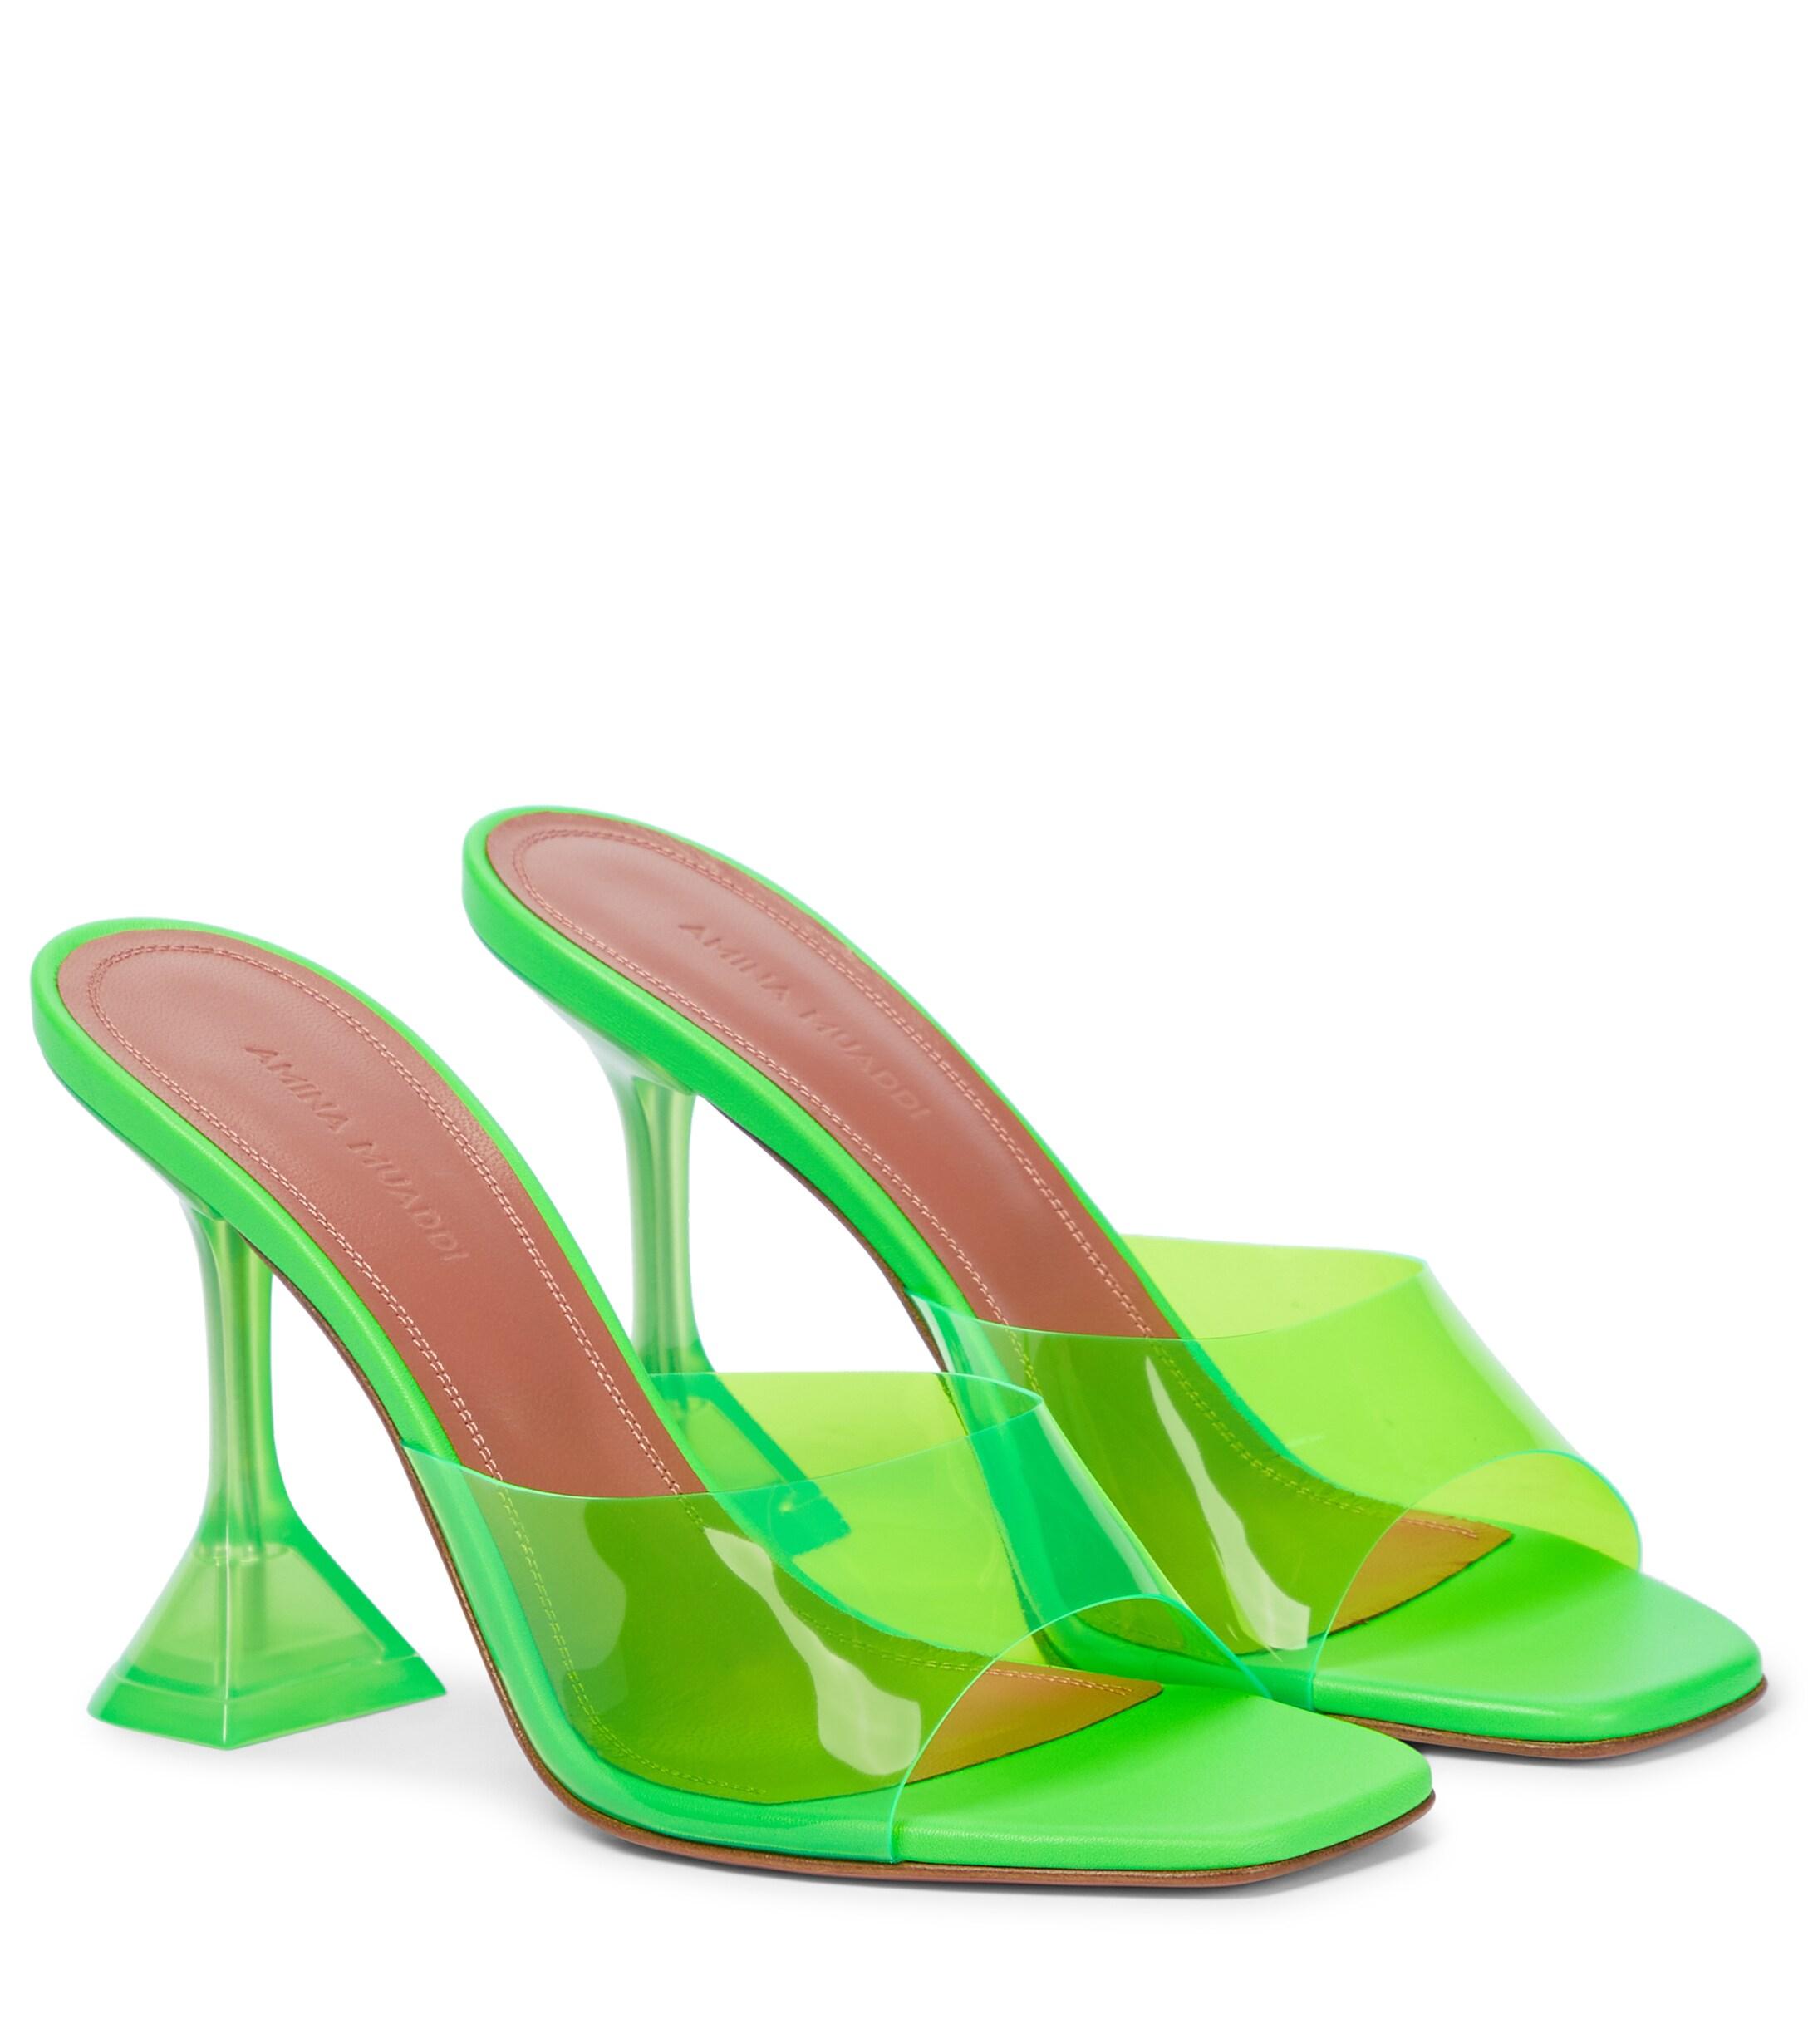 AMINA MUADDI Lupita Pvc Sandals in Green | Lyst